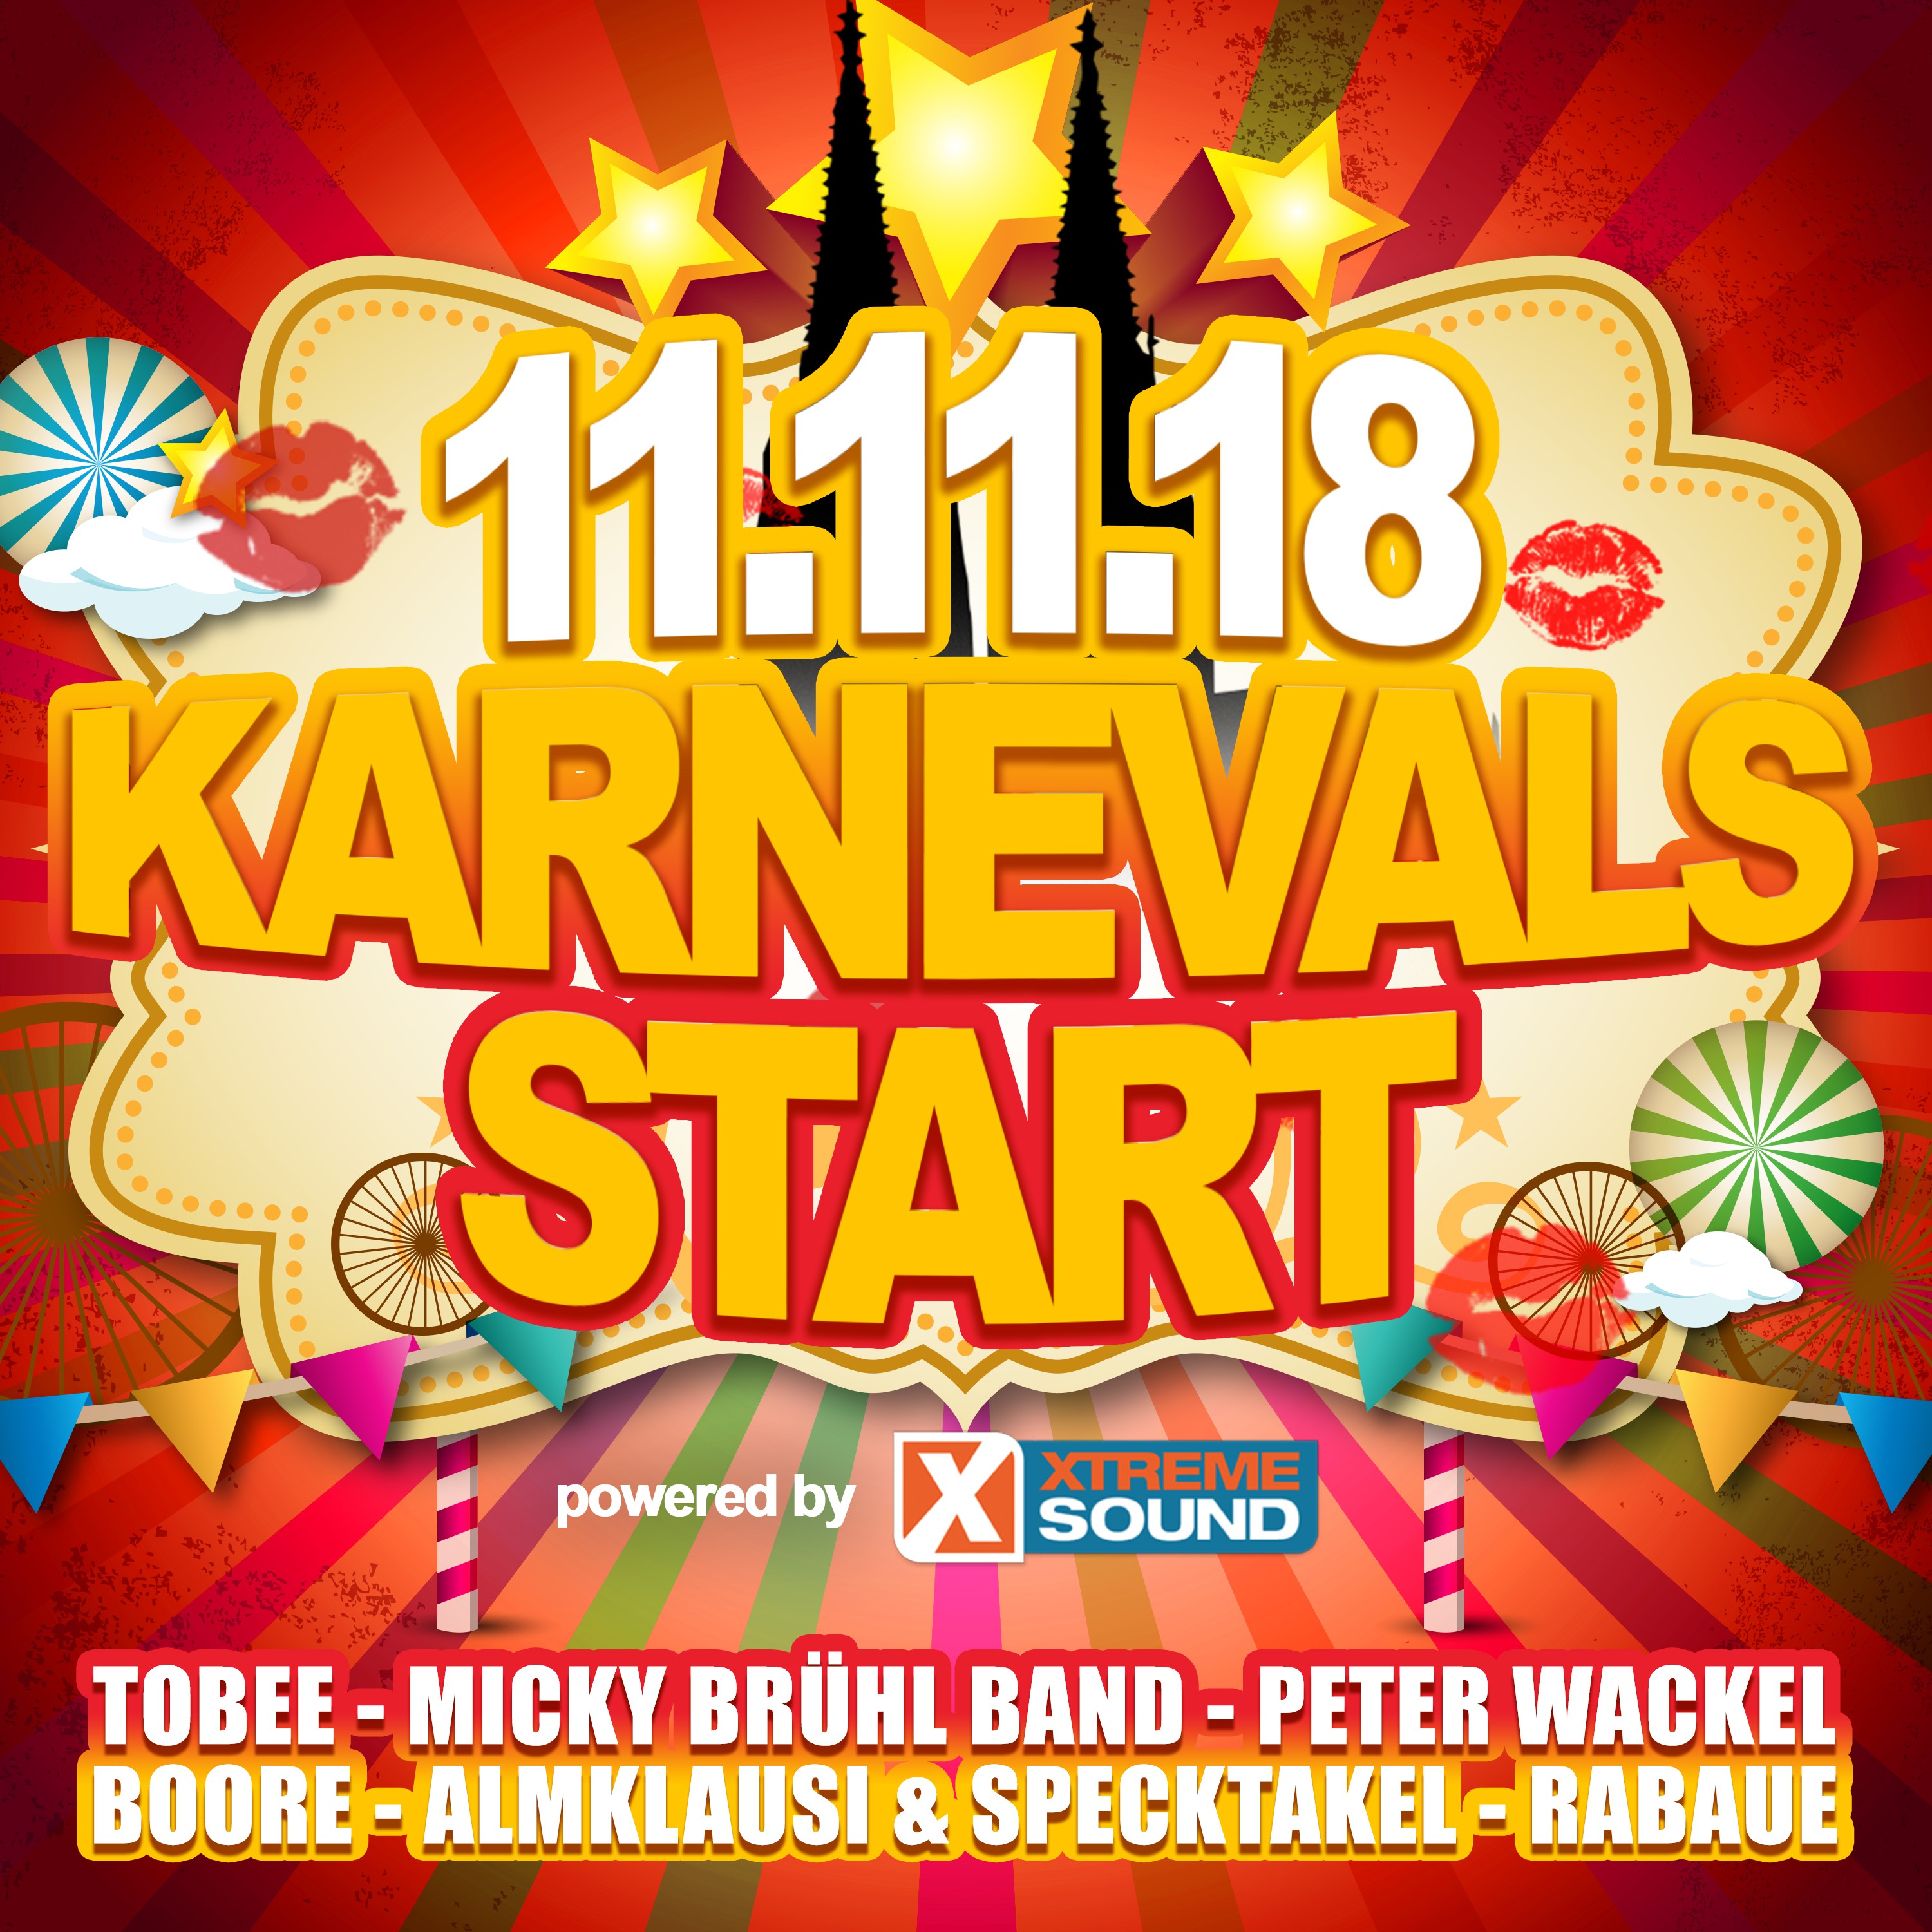 11.11.18 Karnevals Start powered by Xtreme Sound